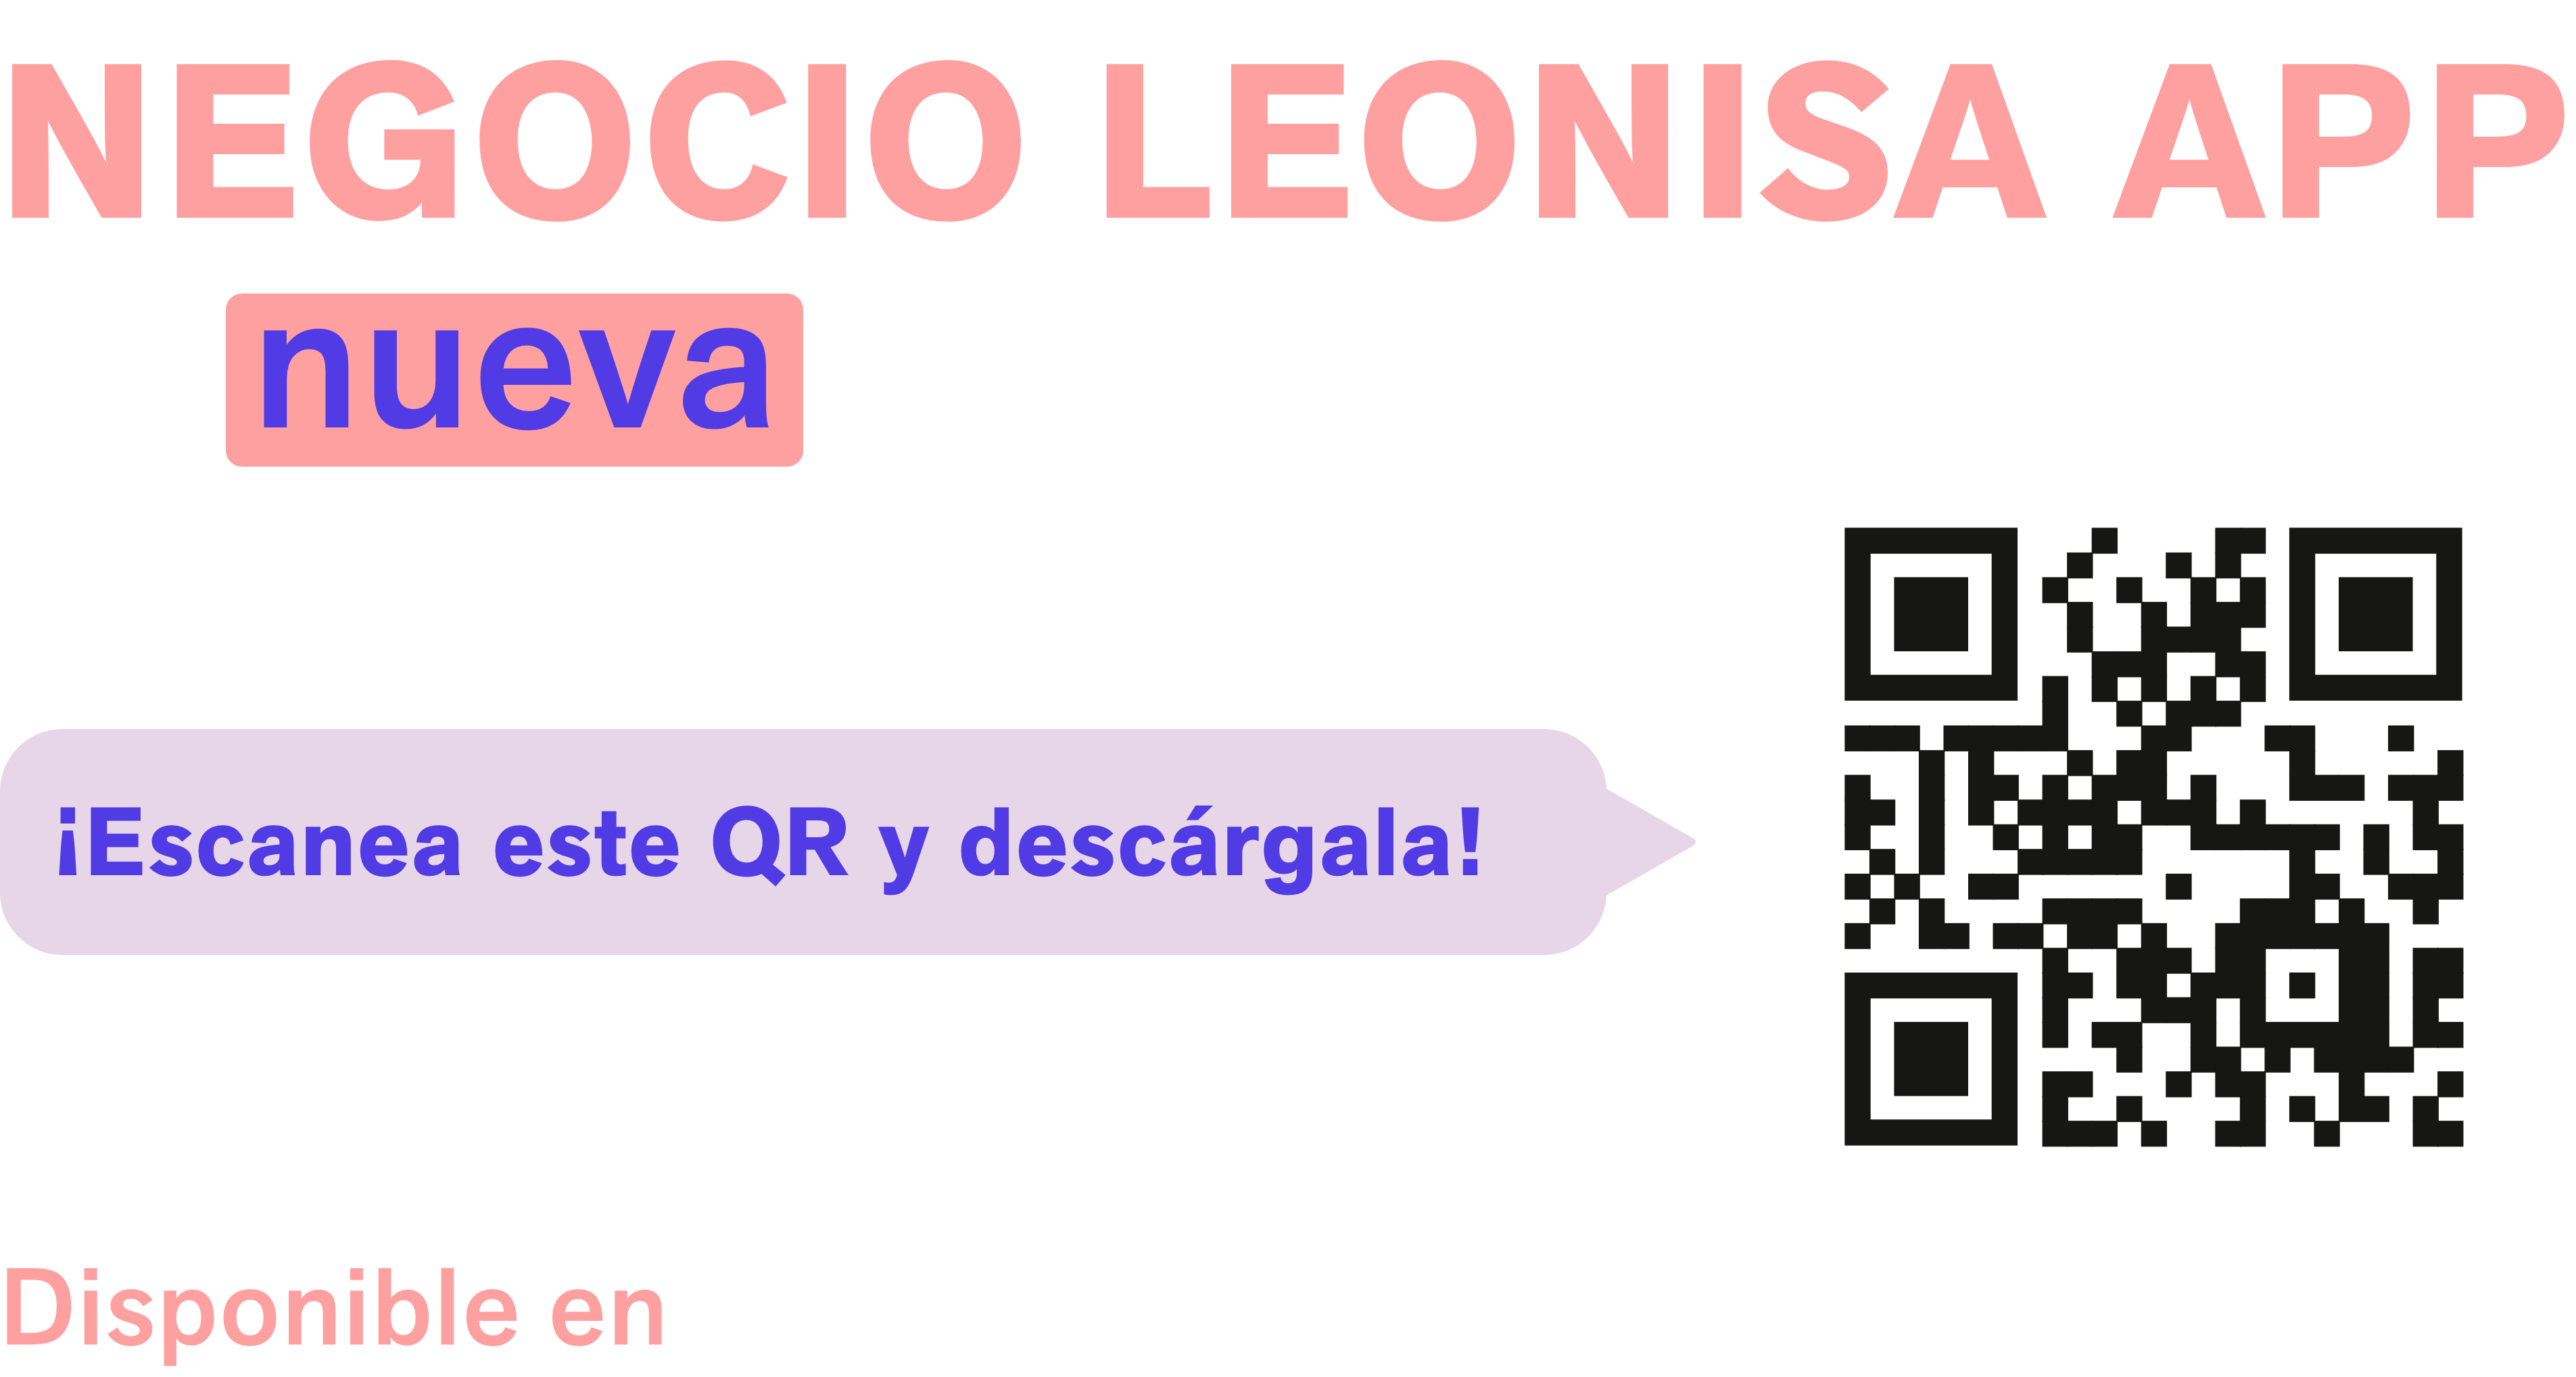 Descarga ya la app Negocio Leonisa